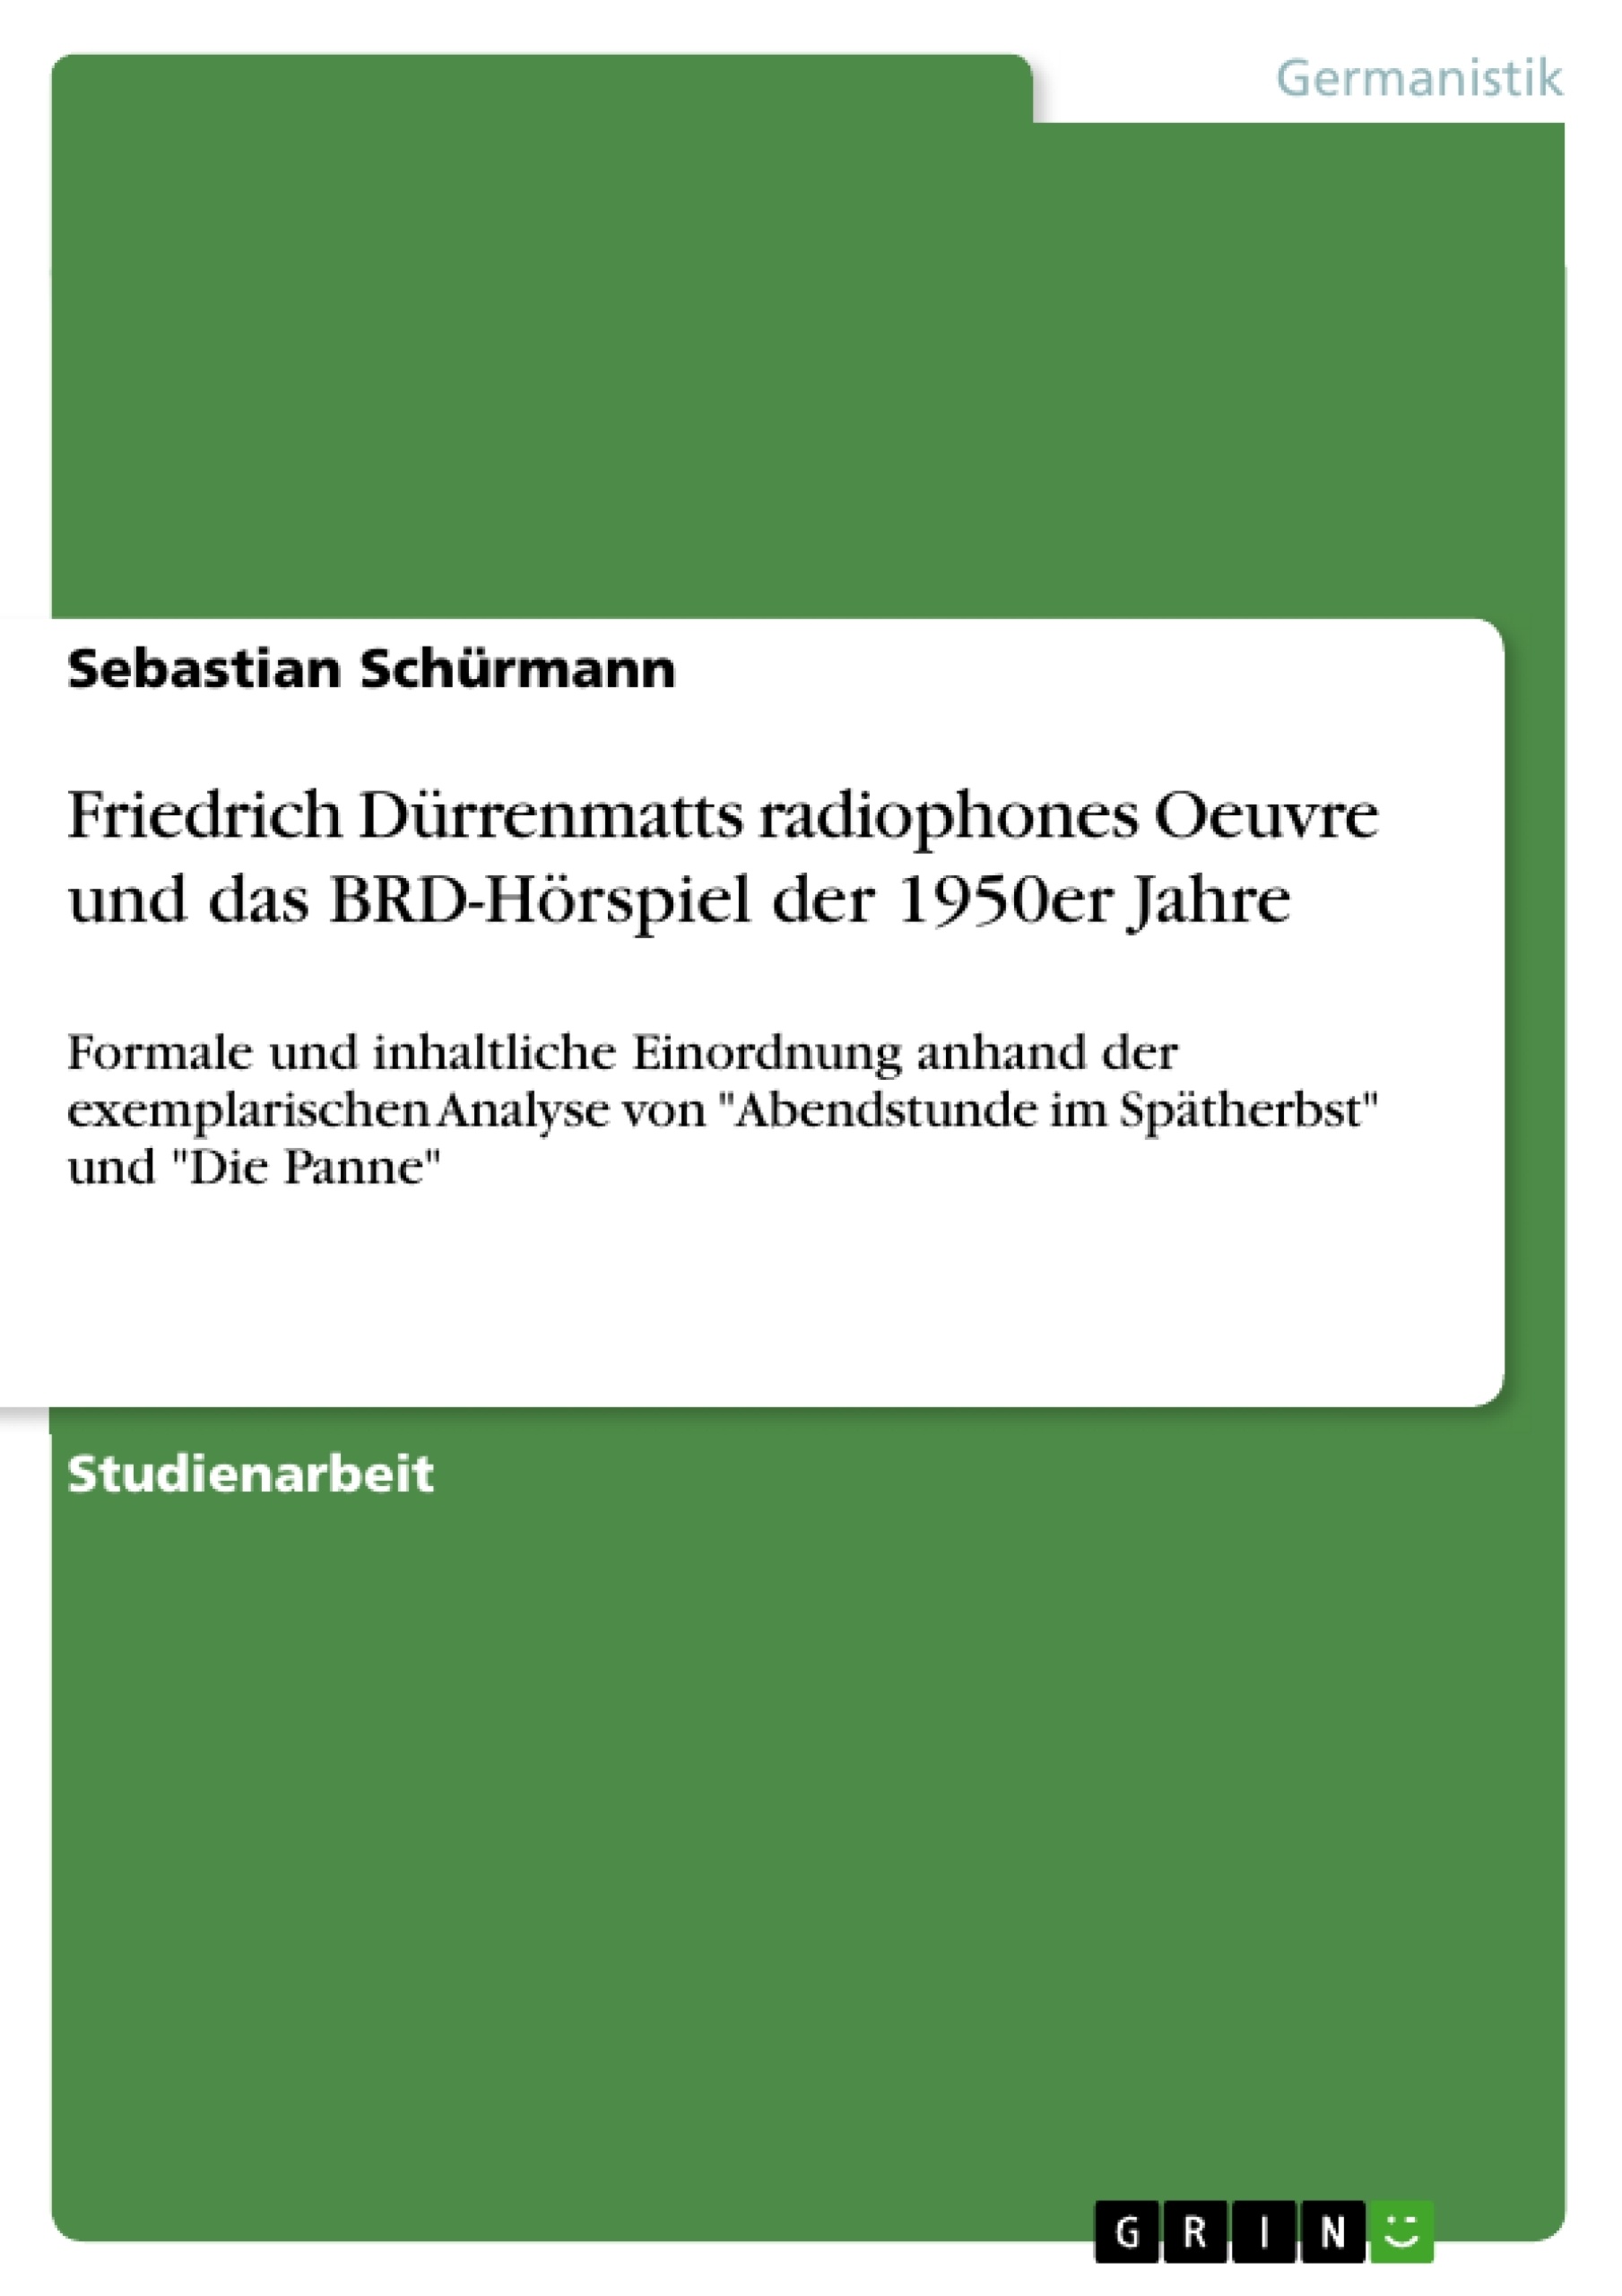 Título: Friedrich Dürrenmatts radiophones Oeuvre und das BRD-Hörspiel der 1950er Jahre